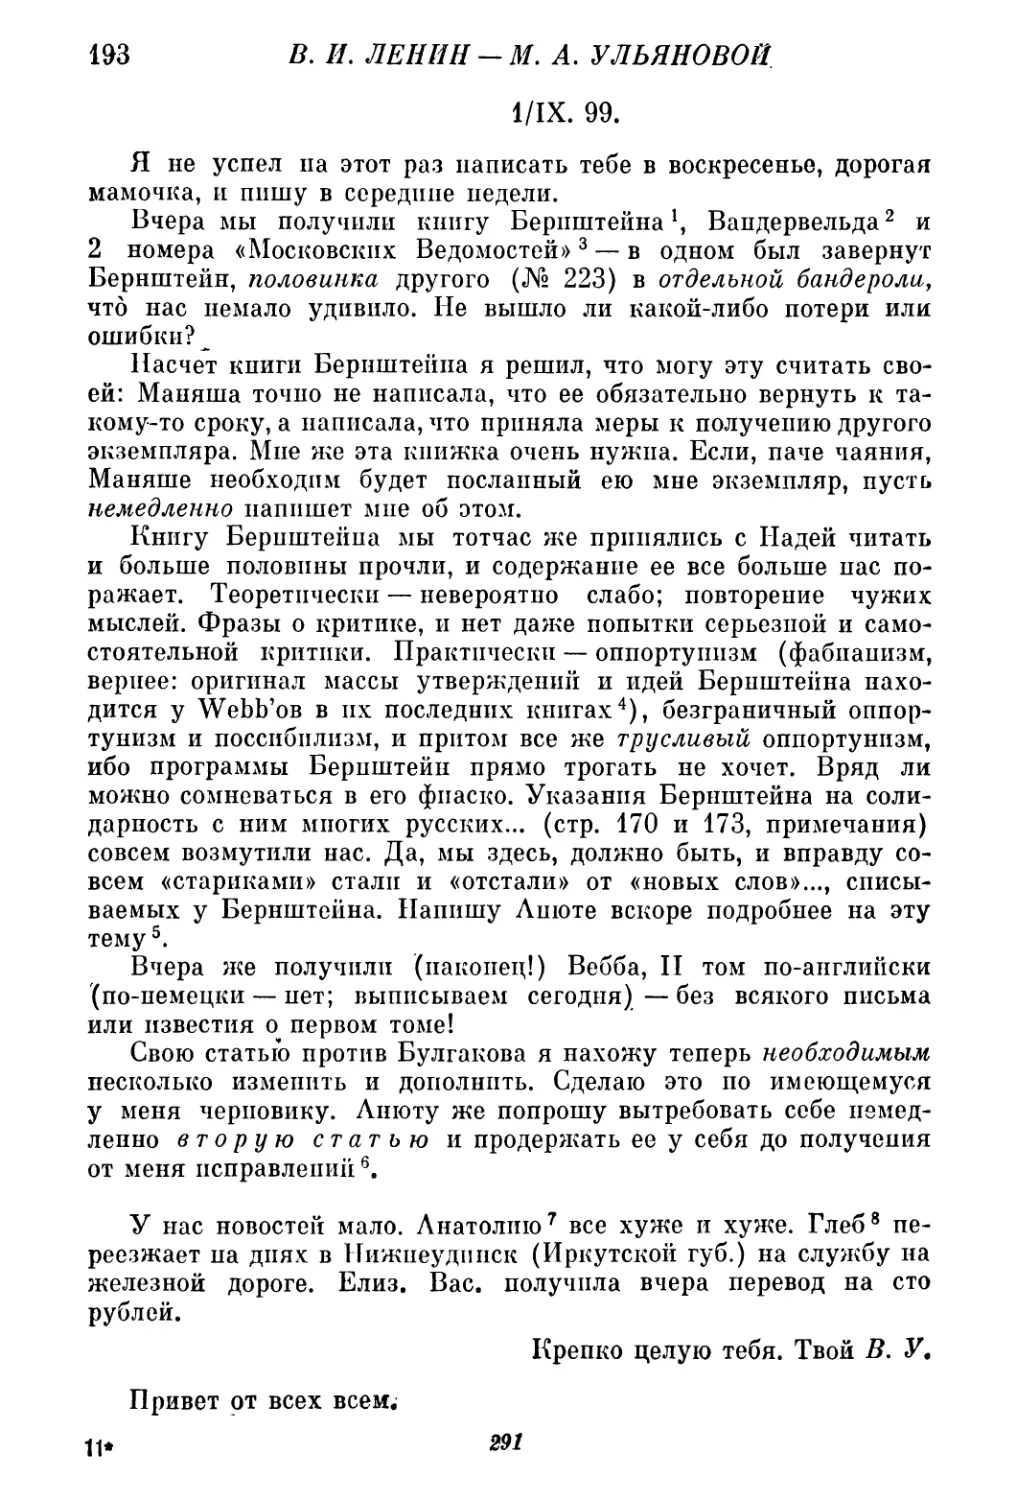 193. В. И. Ленин — М. А. Ульяновой. 1 сентября